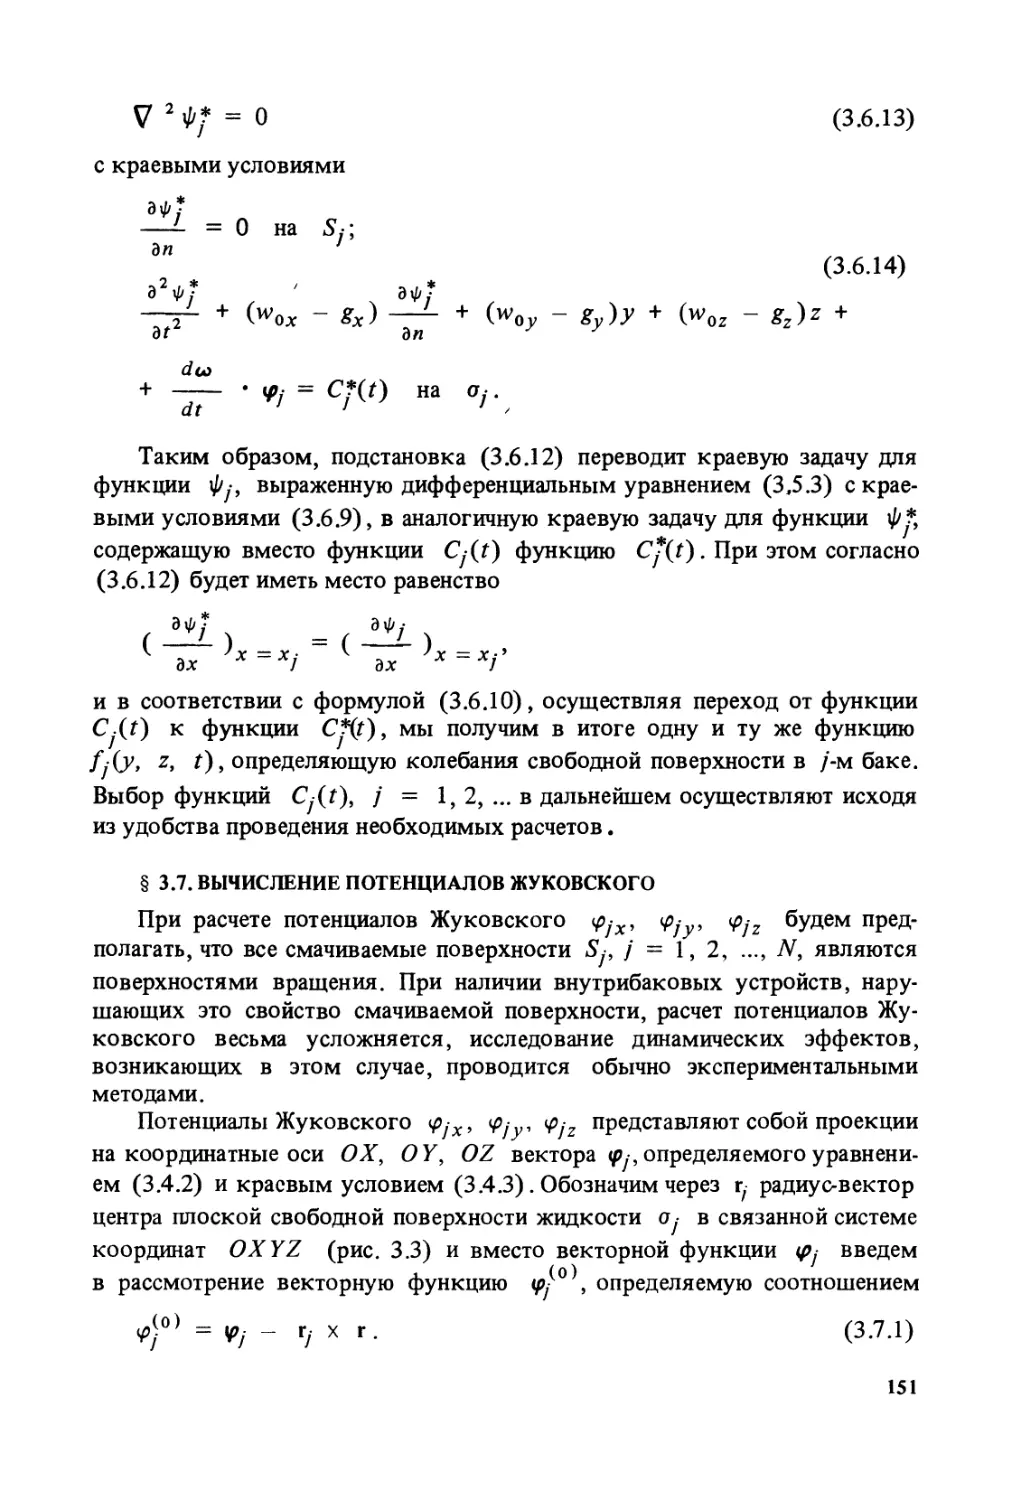 § 3.7. Вычисление потенциалов Жуковского